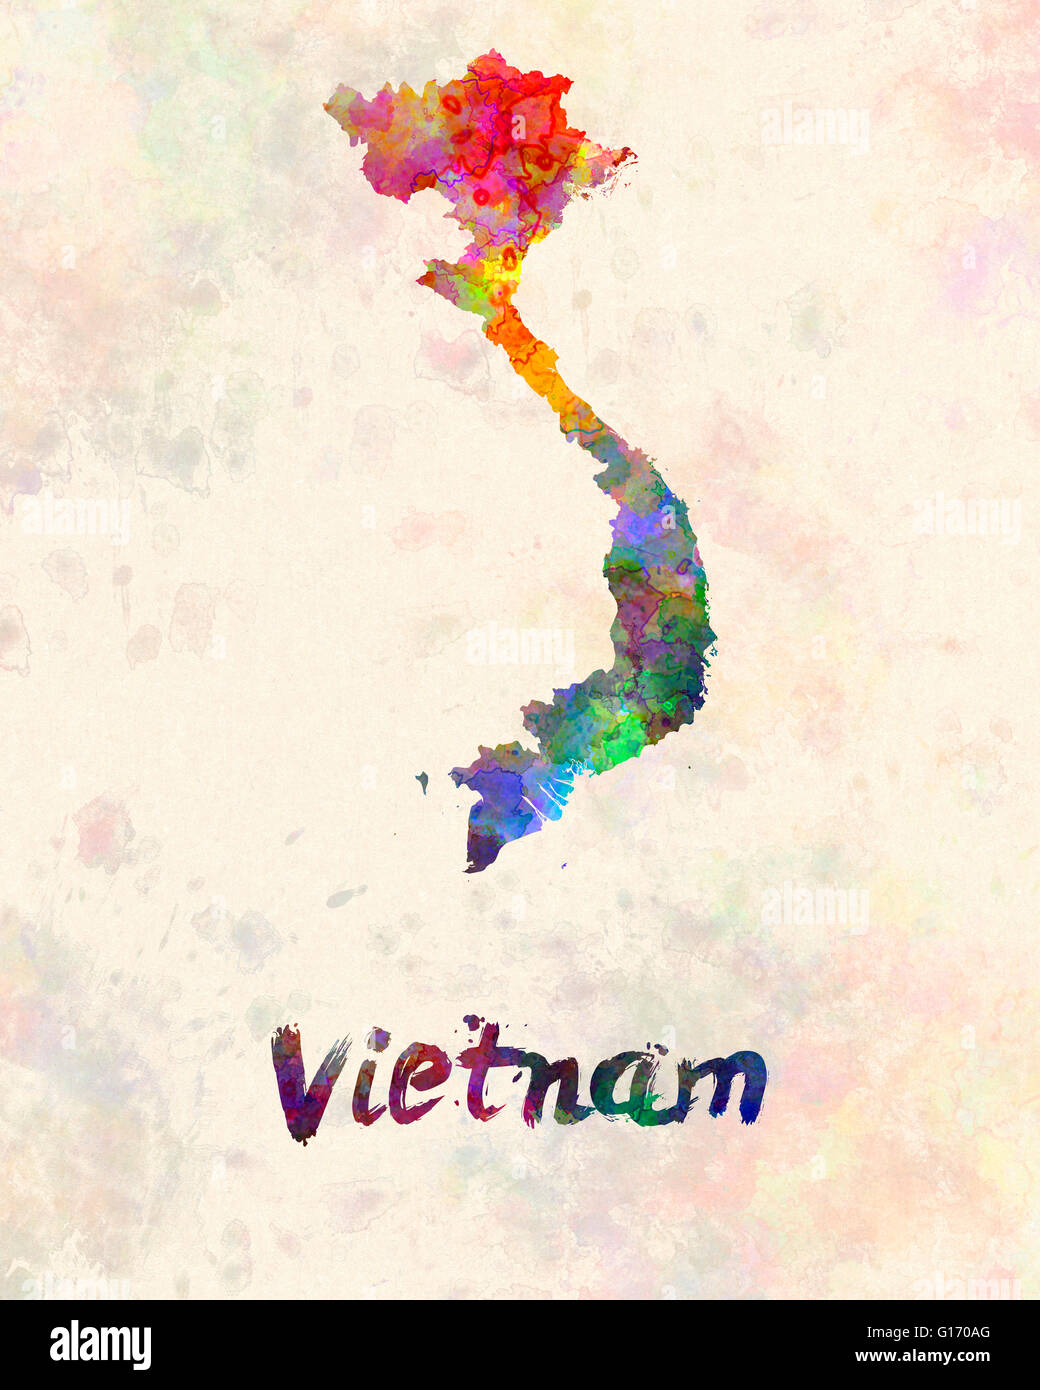 Le Vietnam à l'aquarelle Banque D'Images